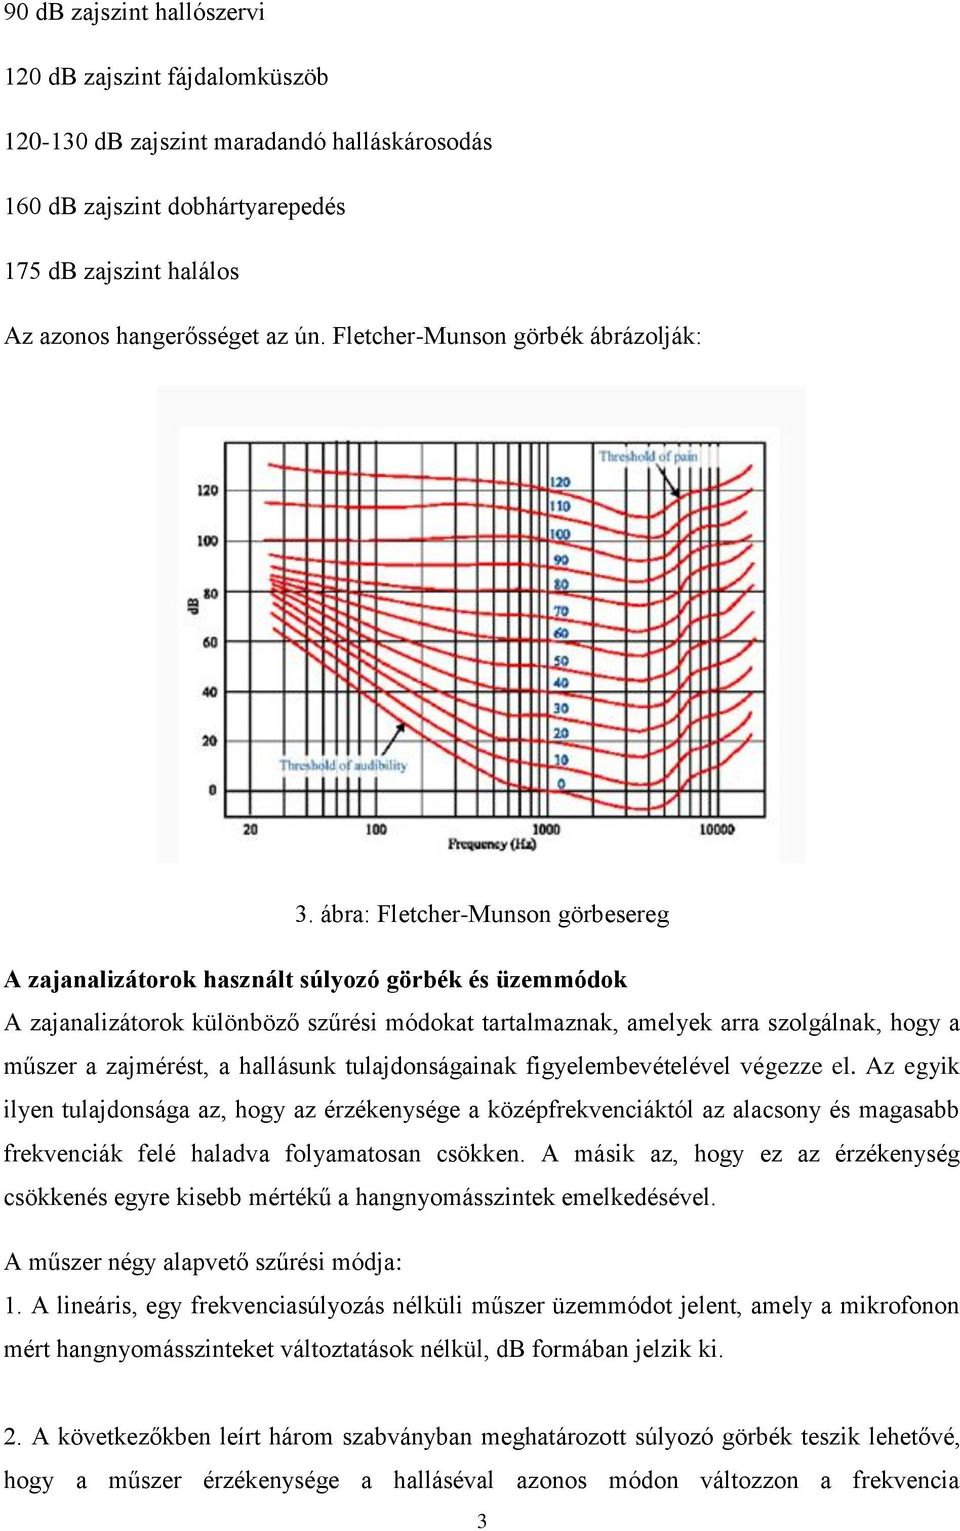 ábra: Fletcher-Munson görbesereg A zajanalizátorok használt súlyozó görbék és üzemmódok A zajanalizátorok különböző szűrési módokat tartalmaznak, amelyek arra szolgálnak, hogy a műszer a zajmérést, a